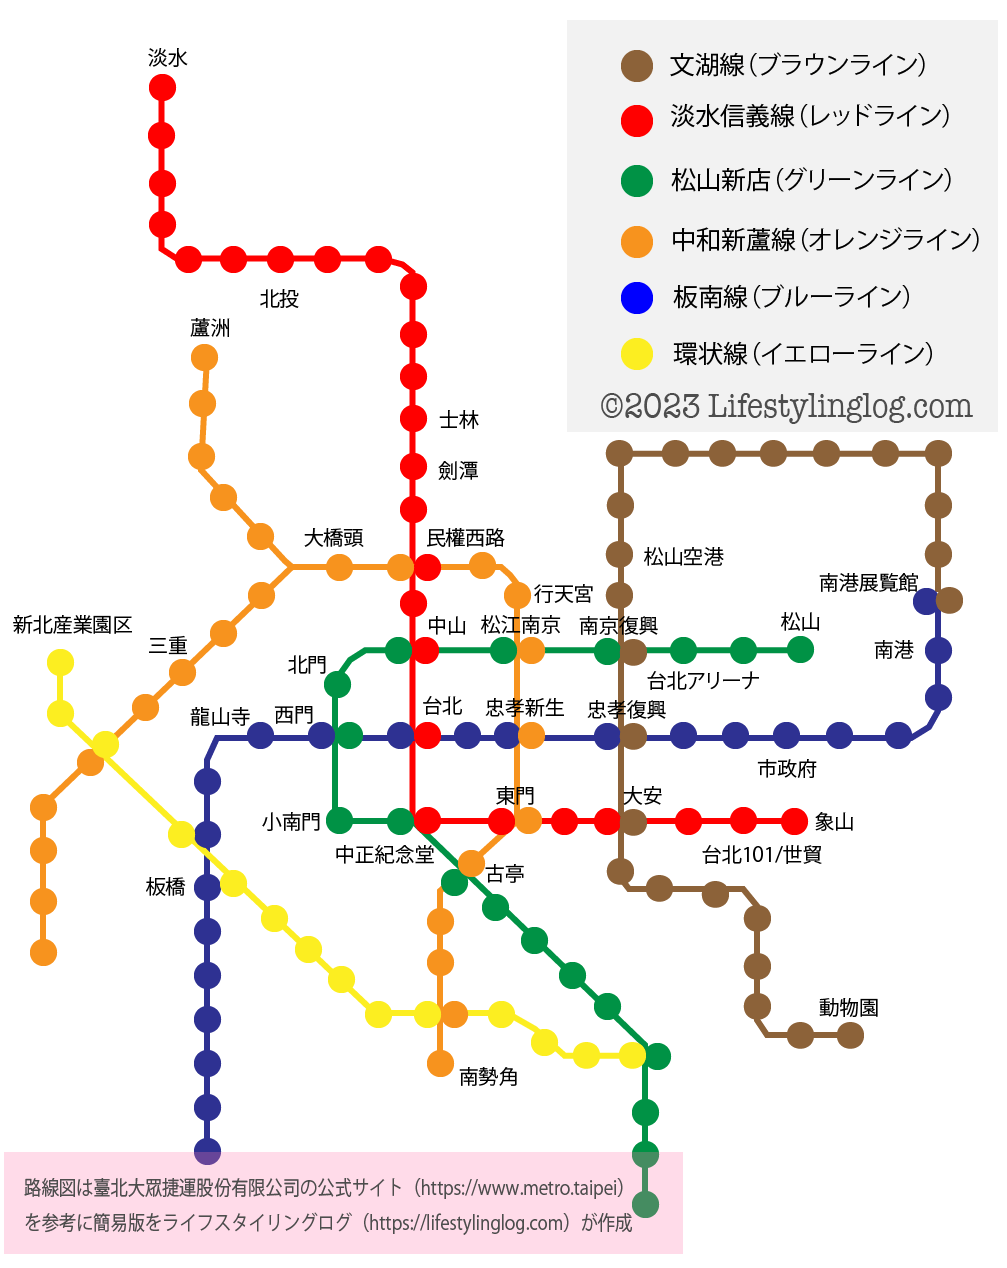 台北MRT路線図のイメージマップ